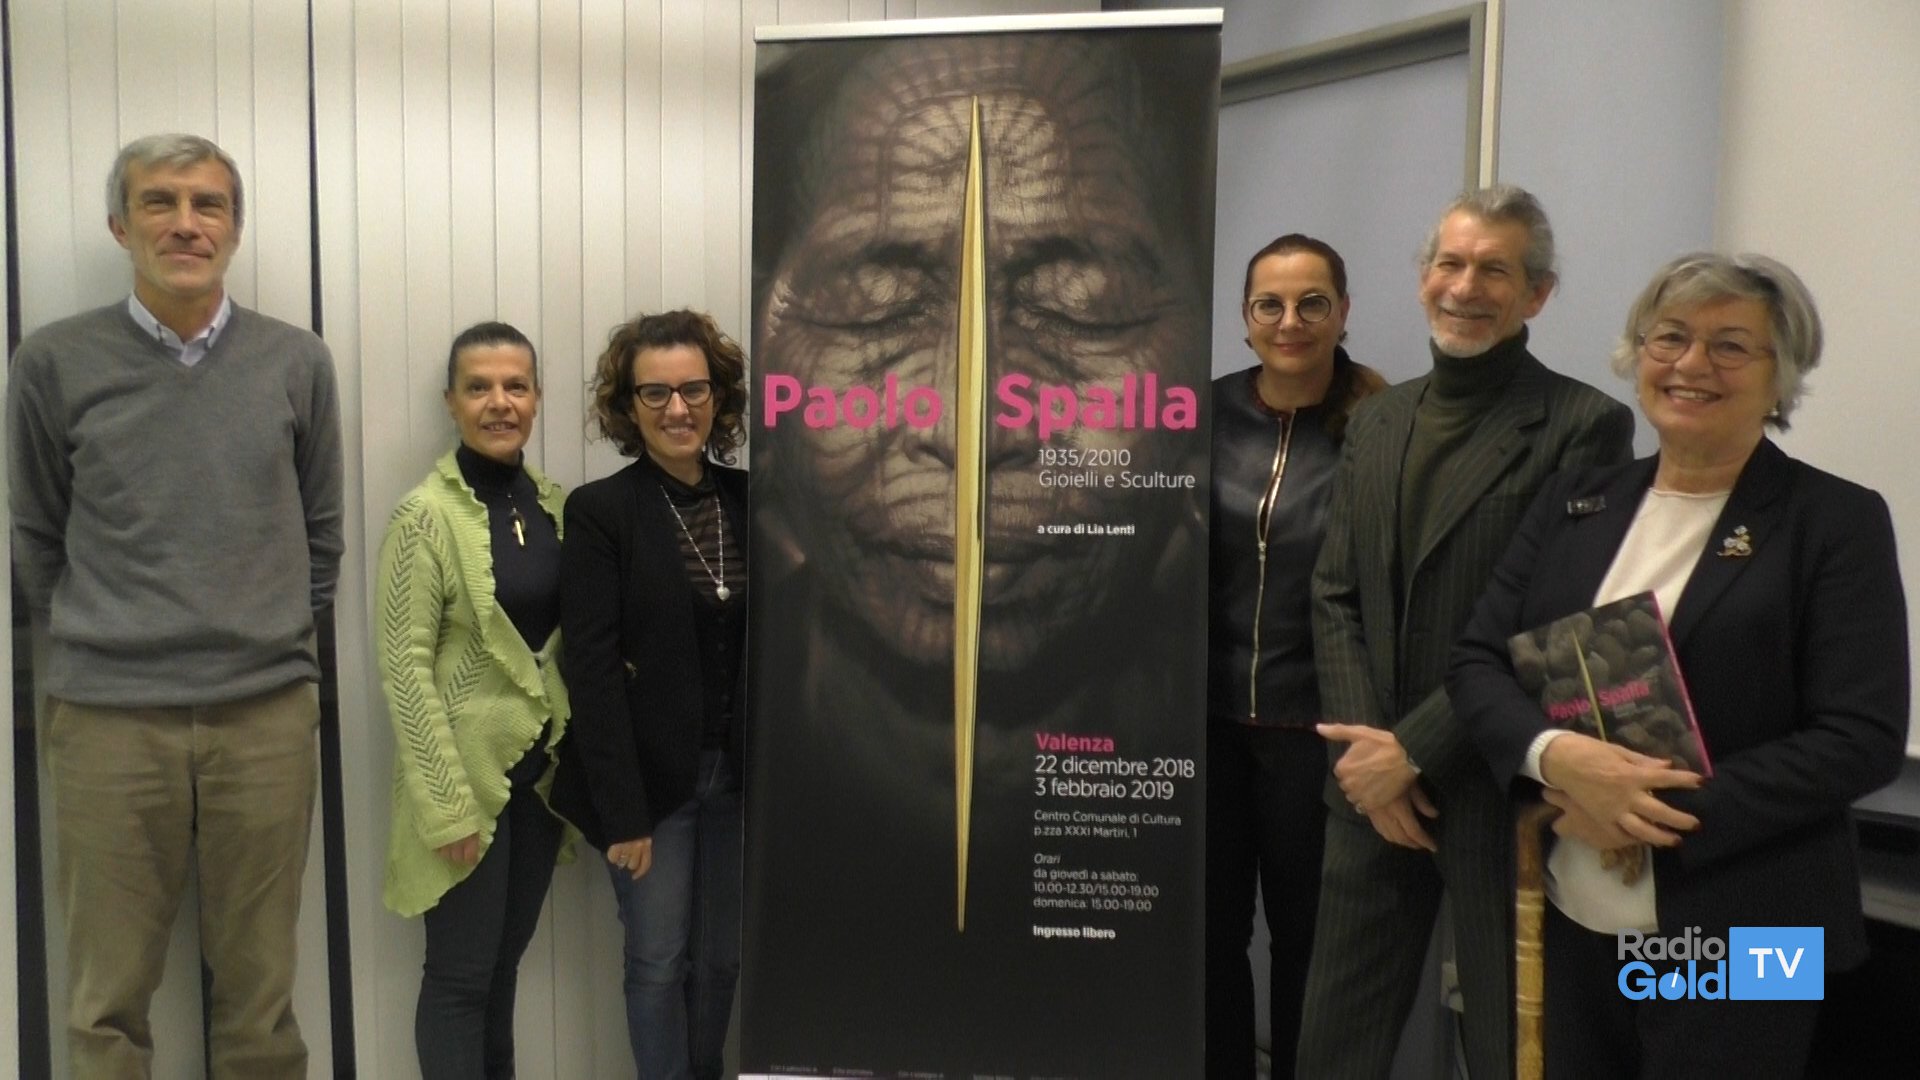 Valenza celebra Paolo Spalla, artista dei sassi e sciamano del futuro